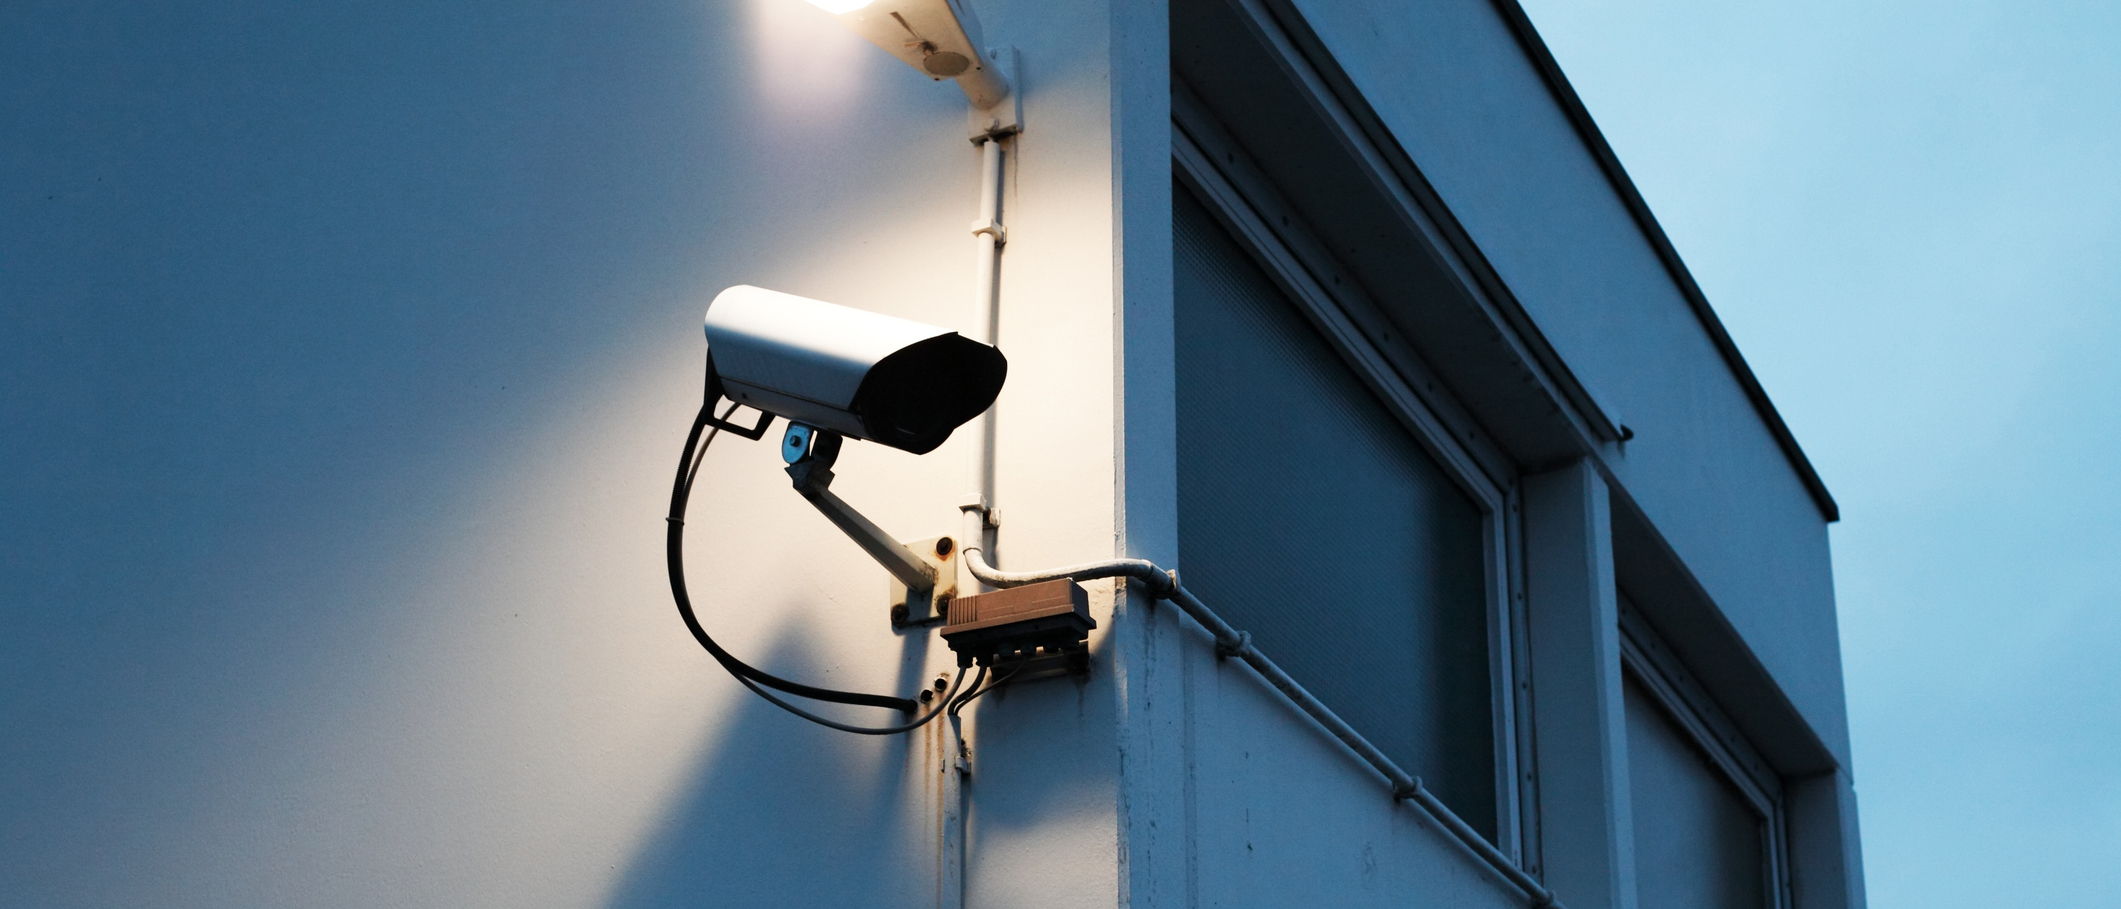 Photo d’un système de surveillance par télévision en circuit fermé permettant de surveiller les lieux d’un bâtiment.